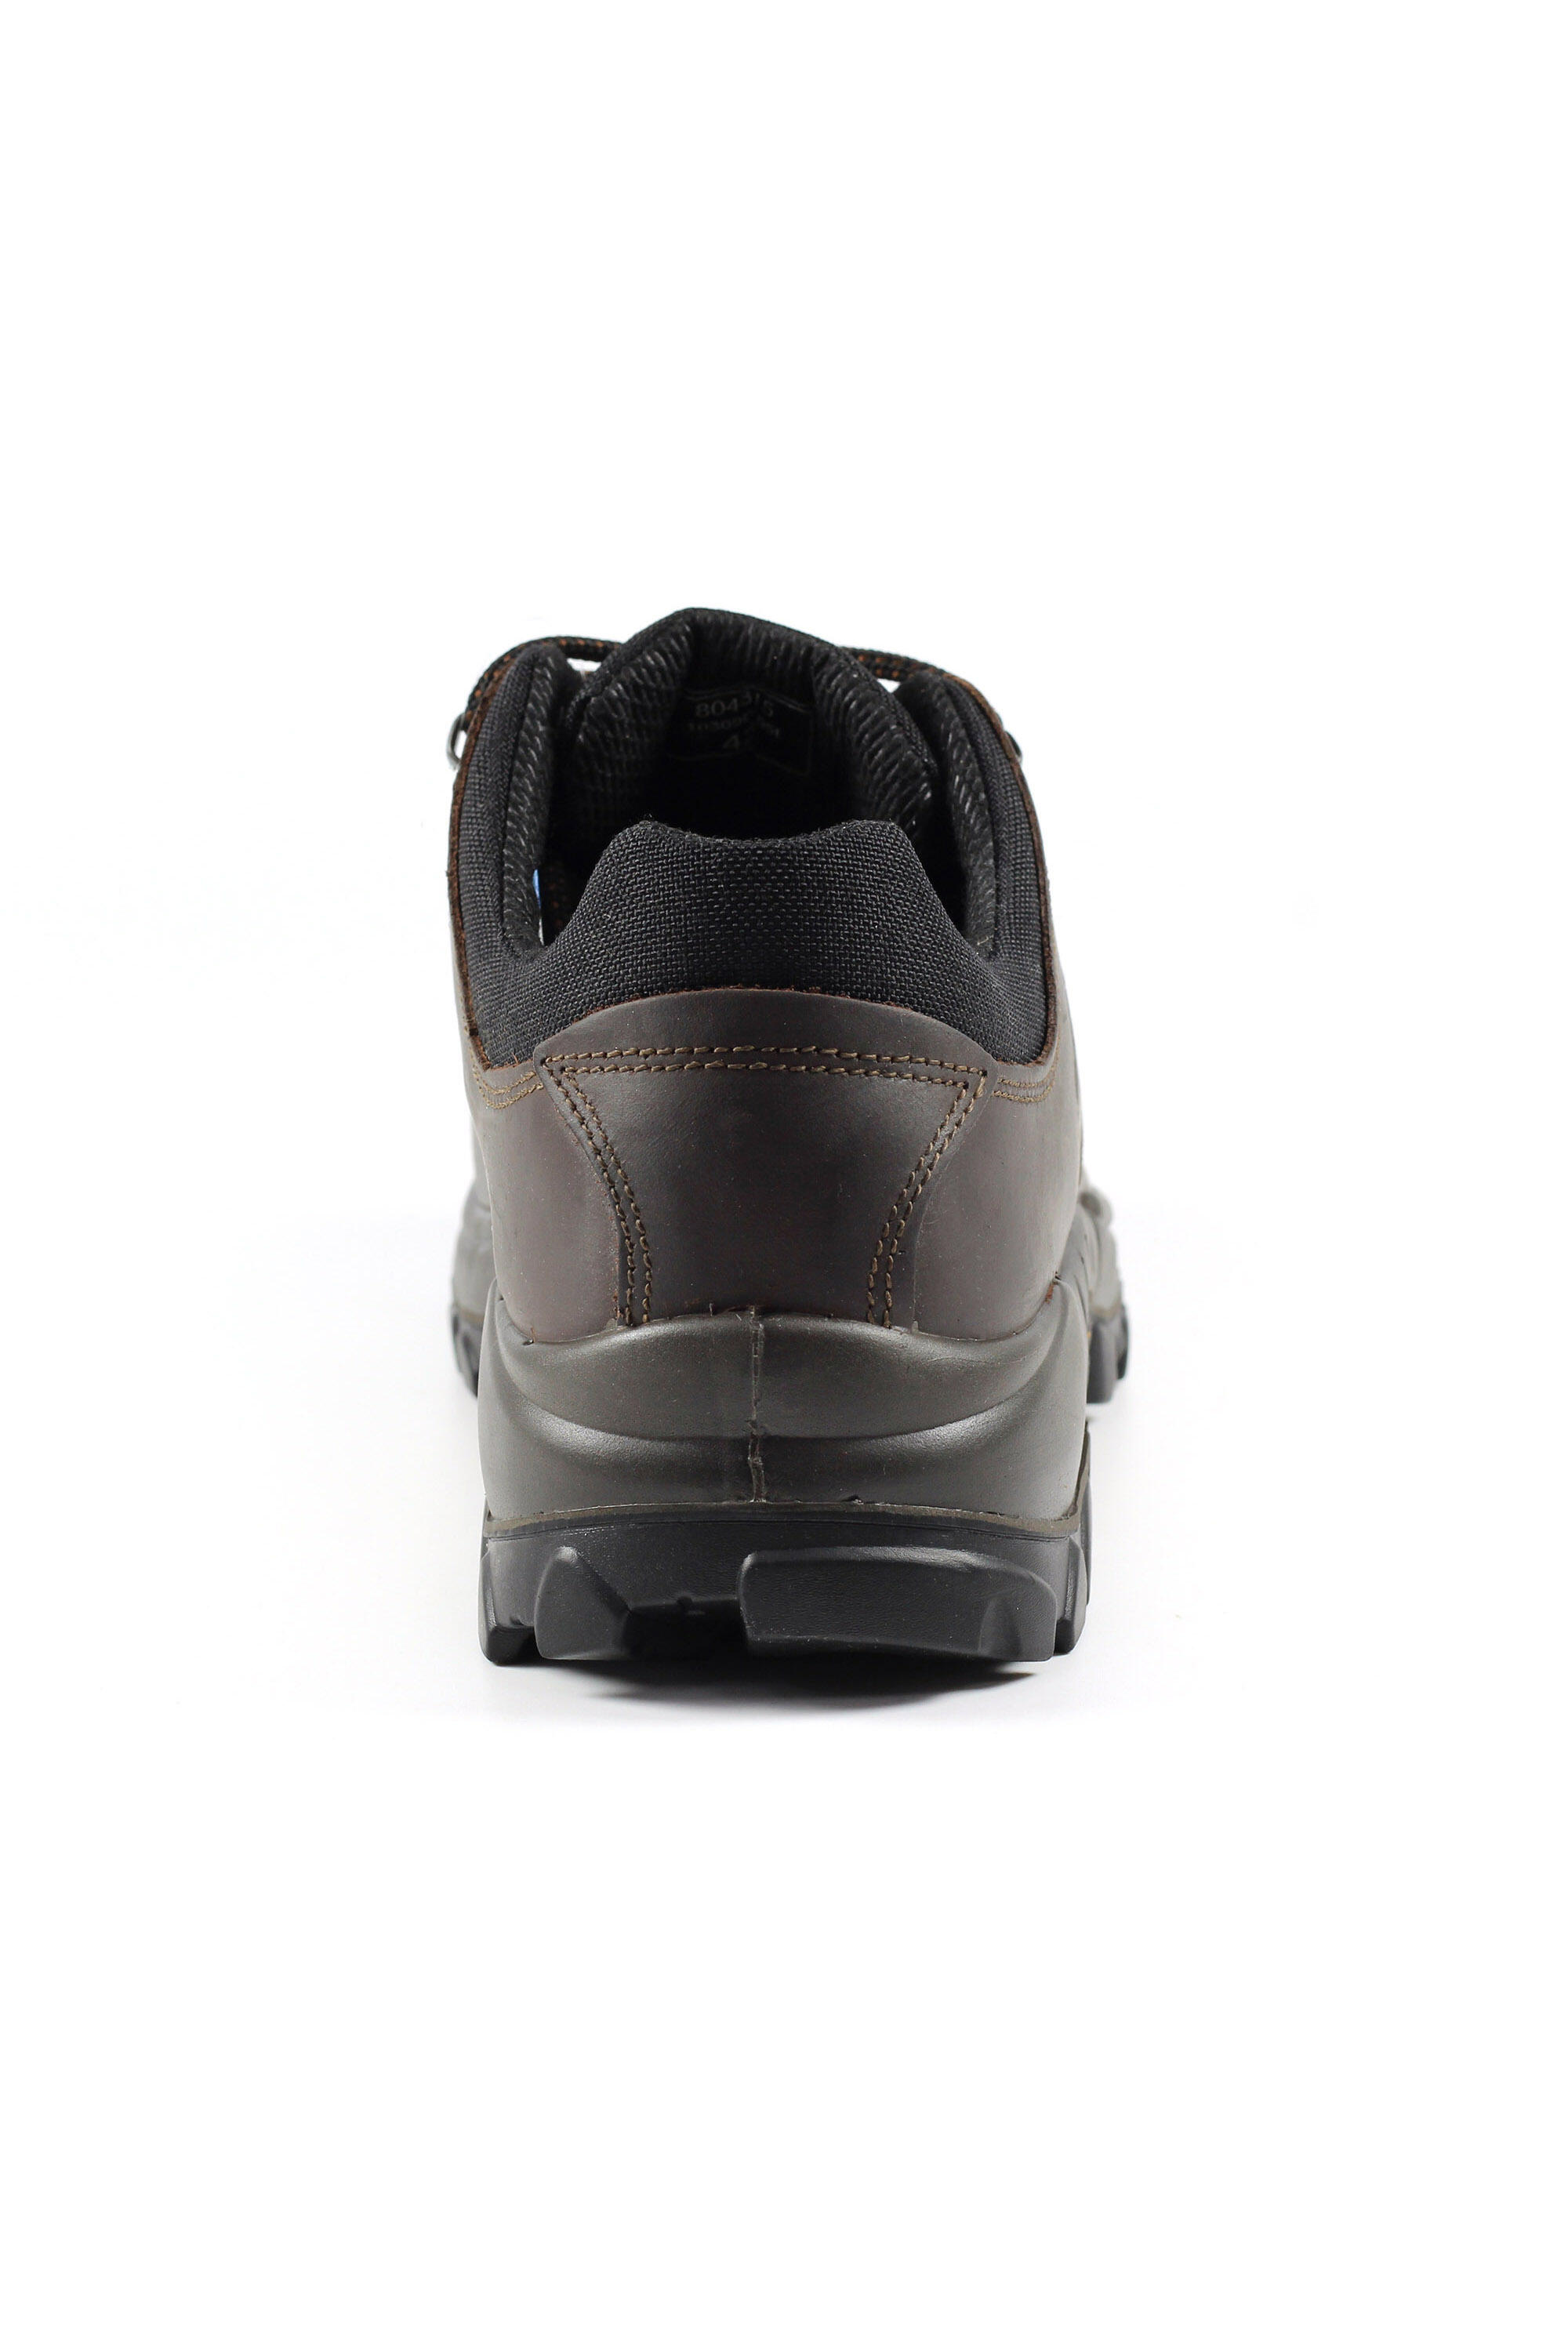 Dartmoor Brown Waterproof Walking Shoes 5/5